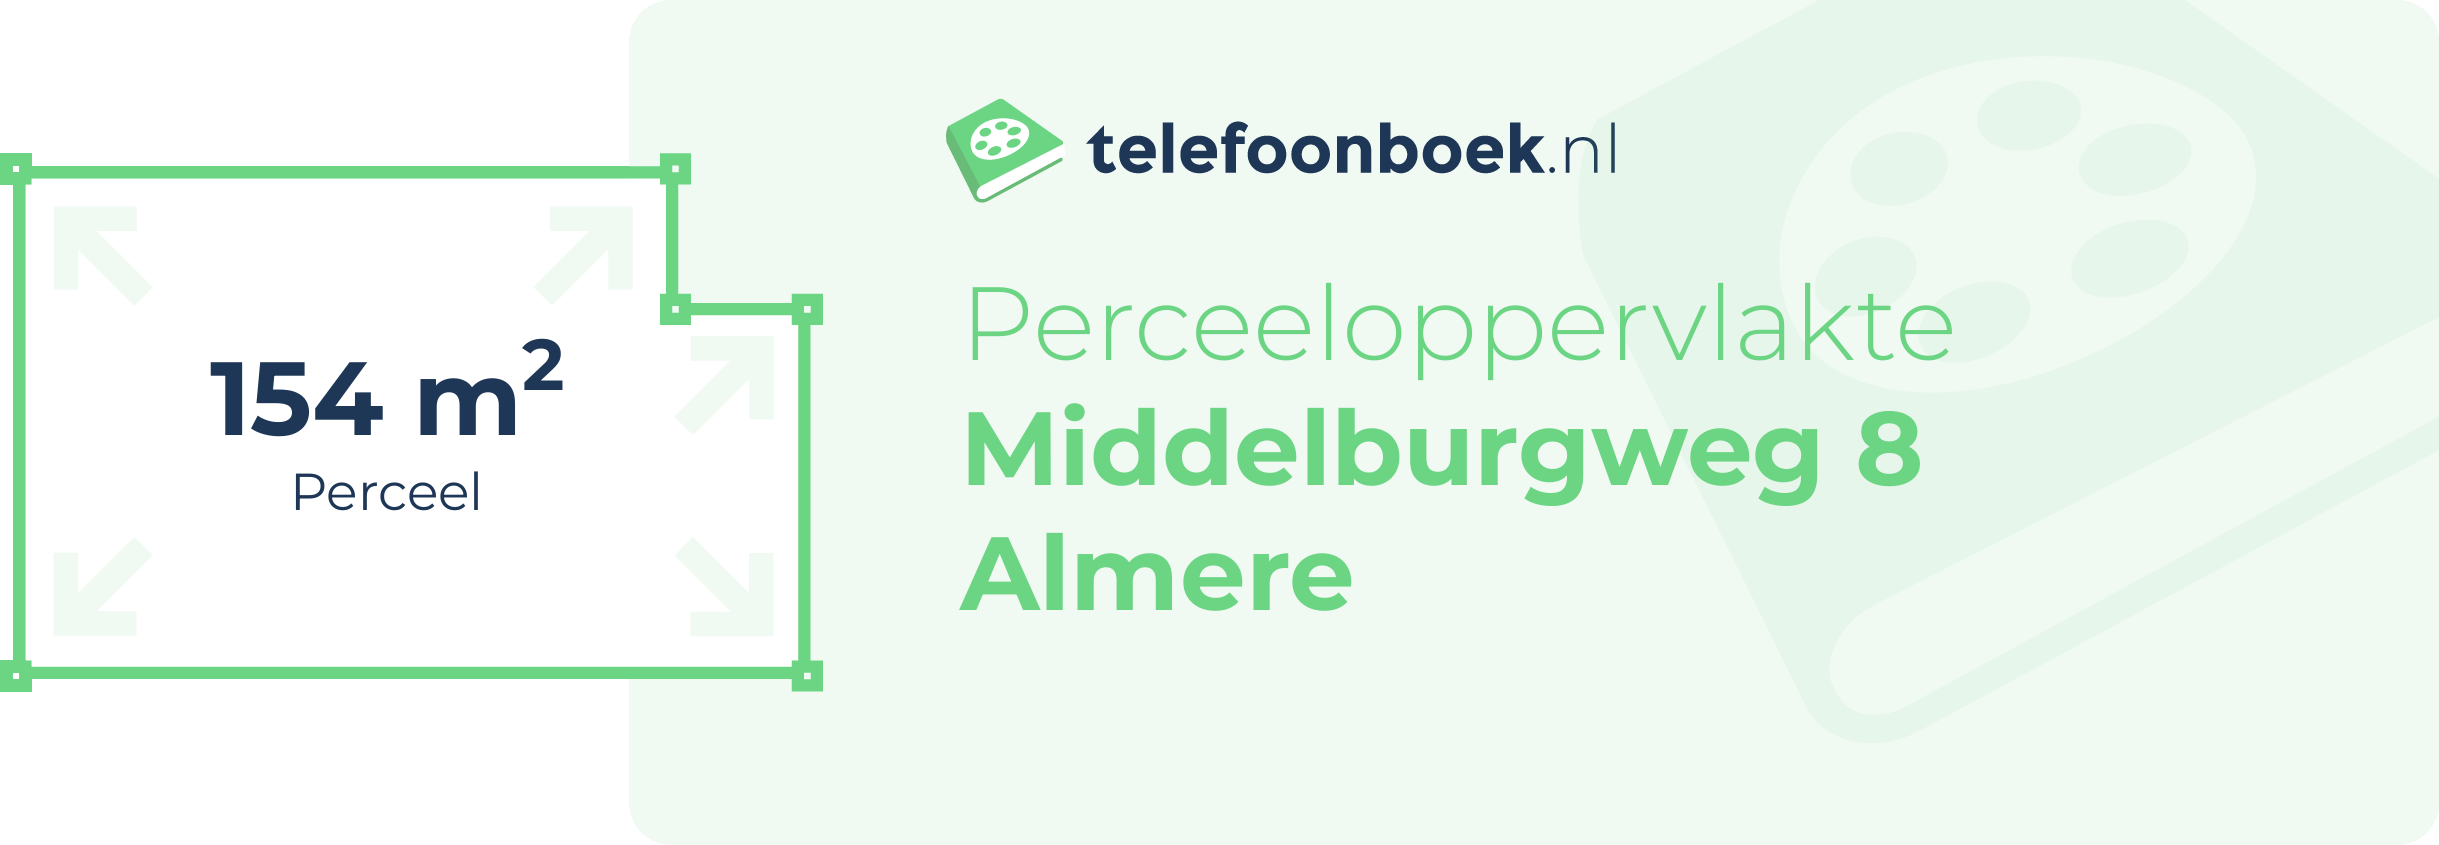 Perceeloppervlakte Middelburgweg 8 Almere